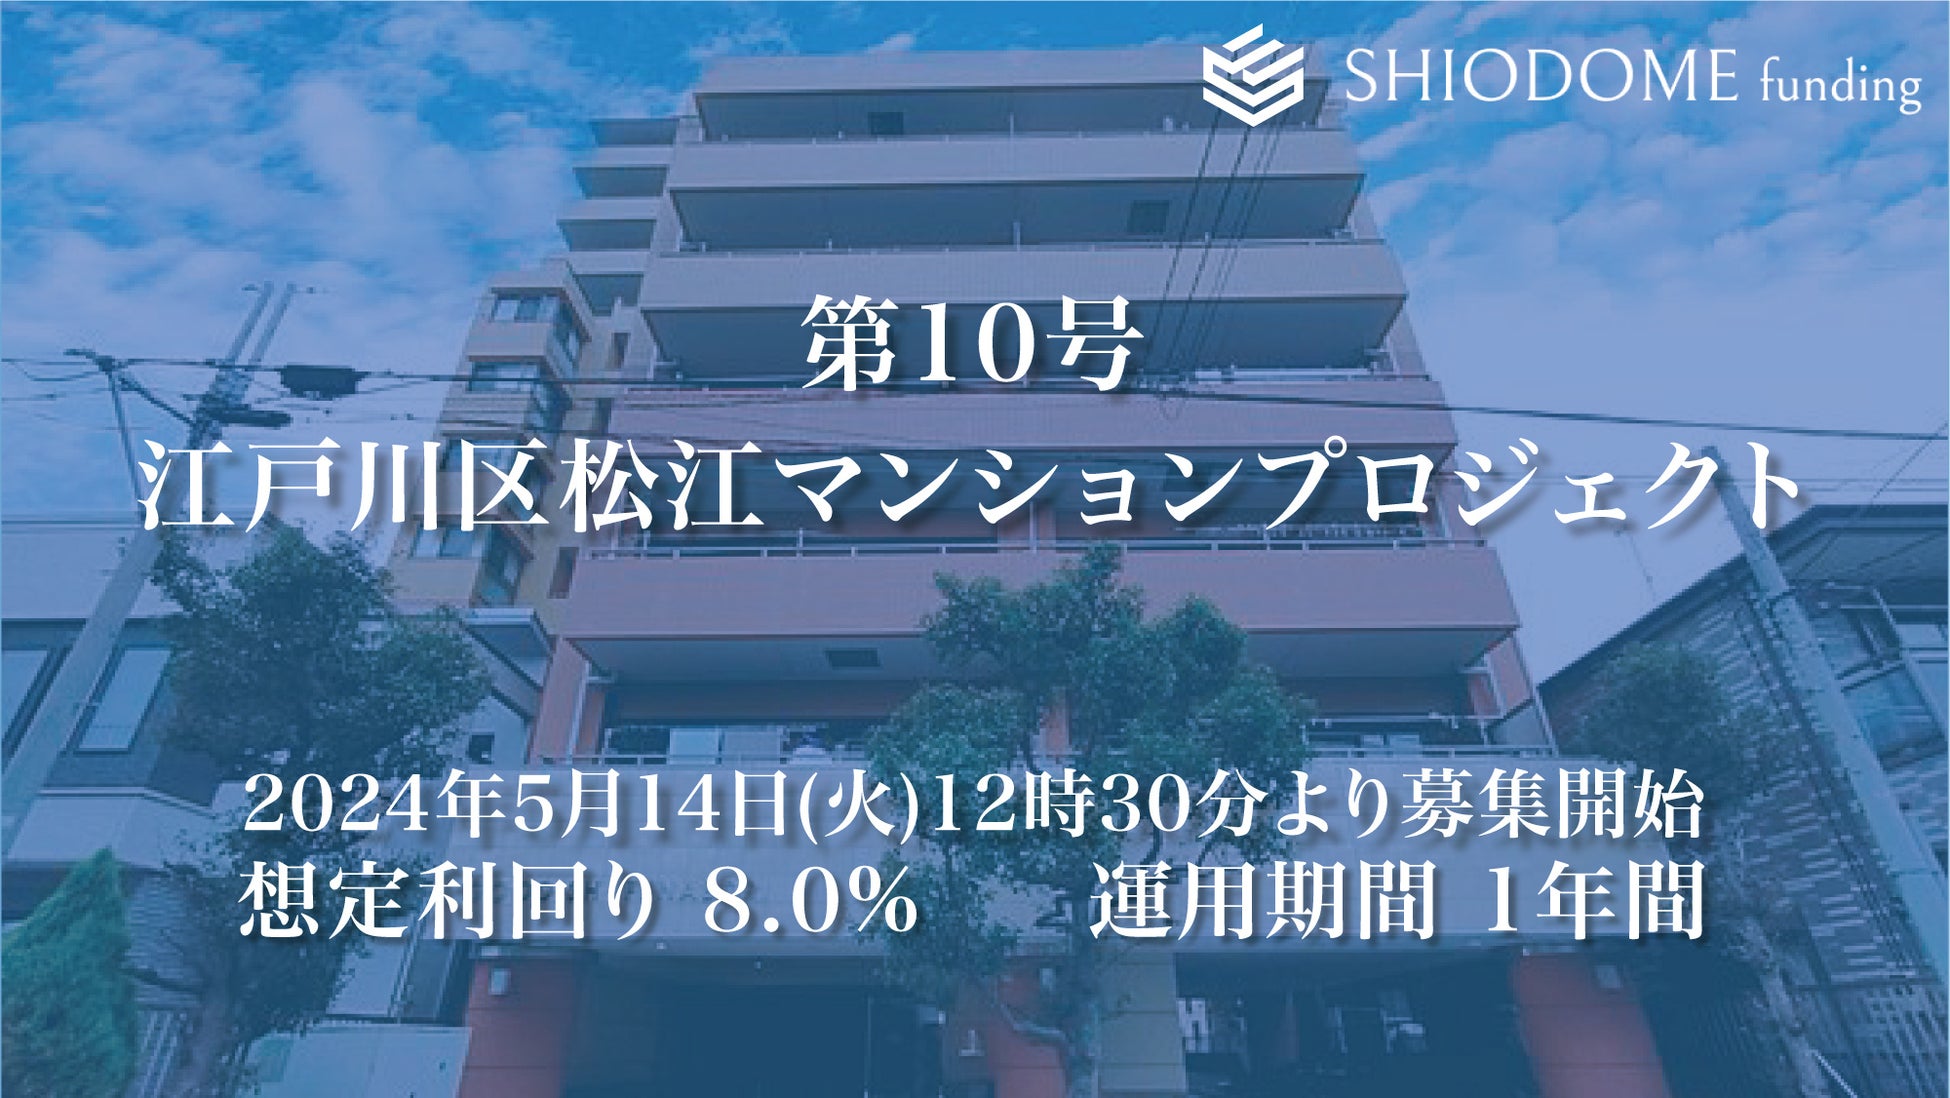 「汐留funding」 第10号江戸川区松江マンションプロジェクトの募集概要を公開